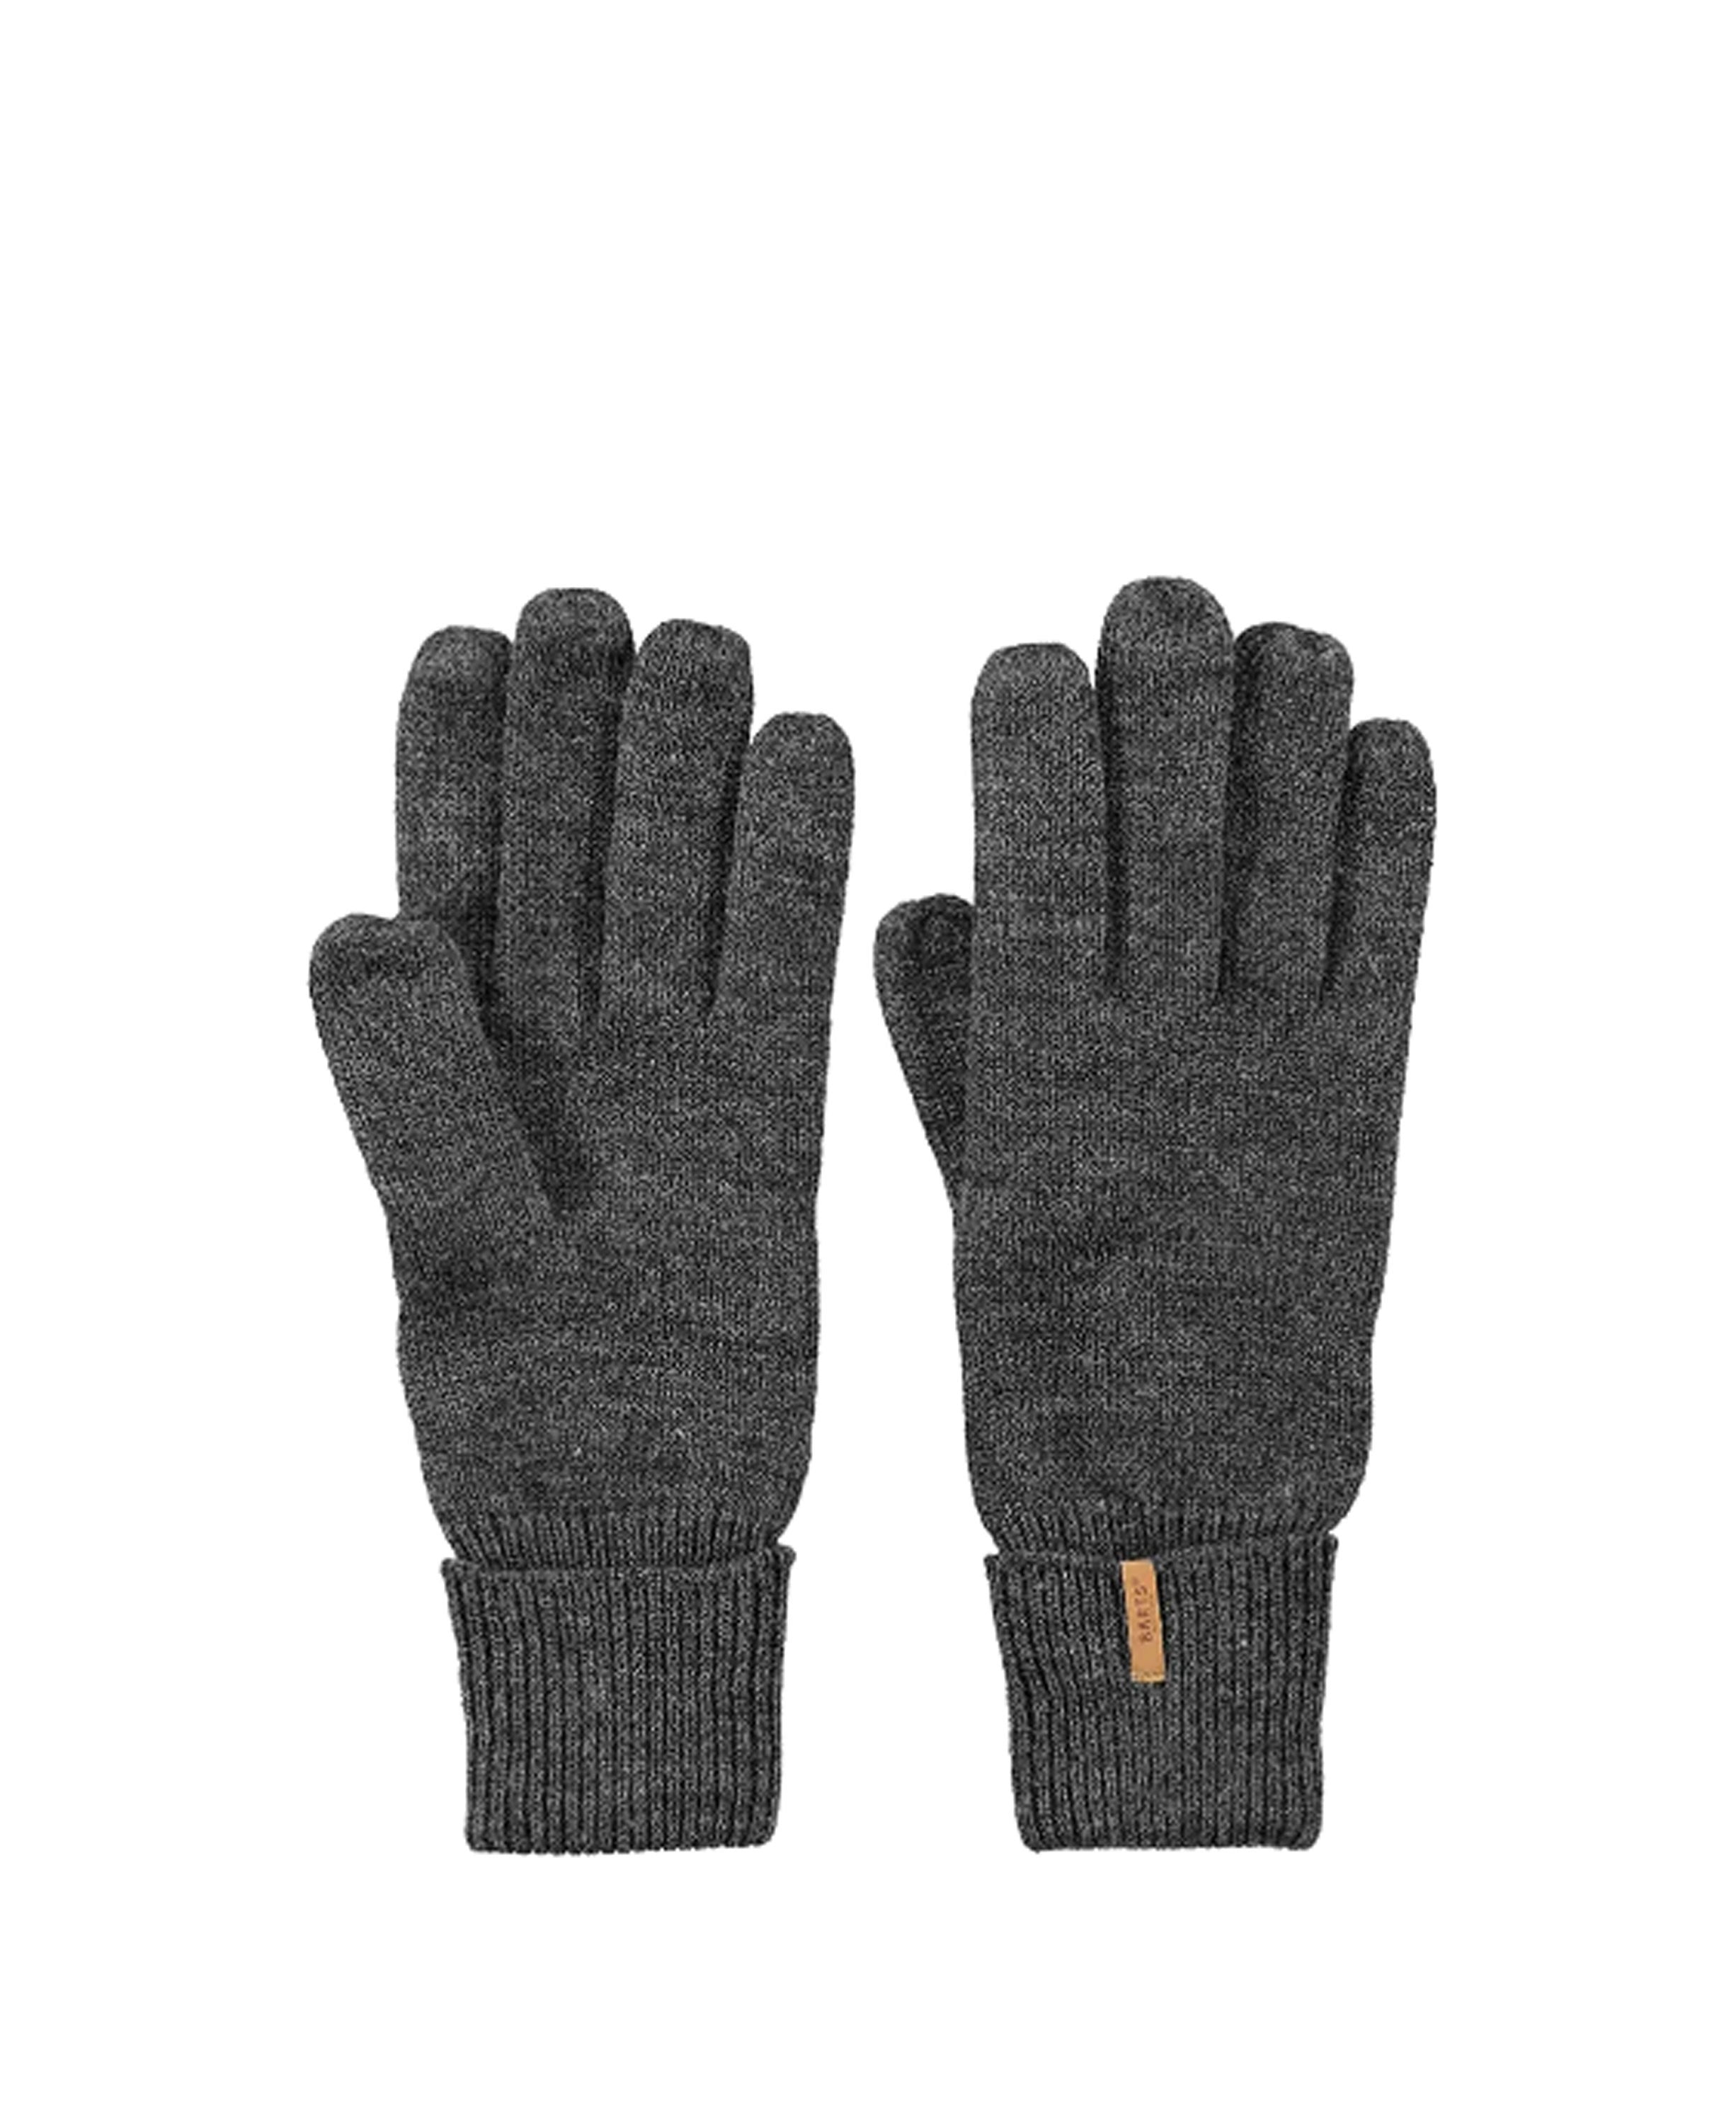 Fine Knitted Gloves - Dark Heather